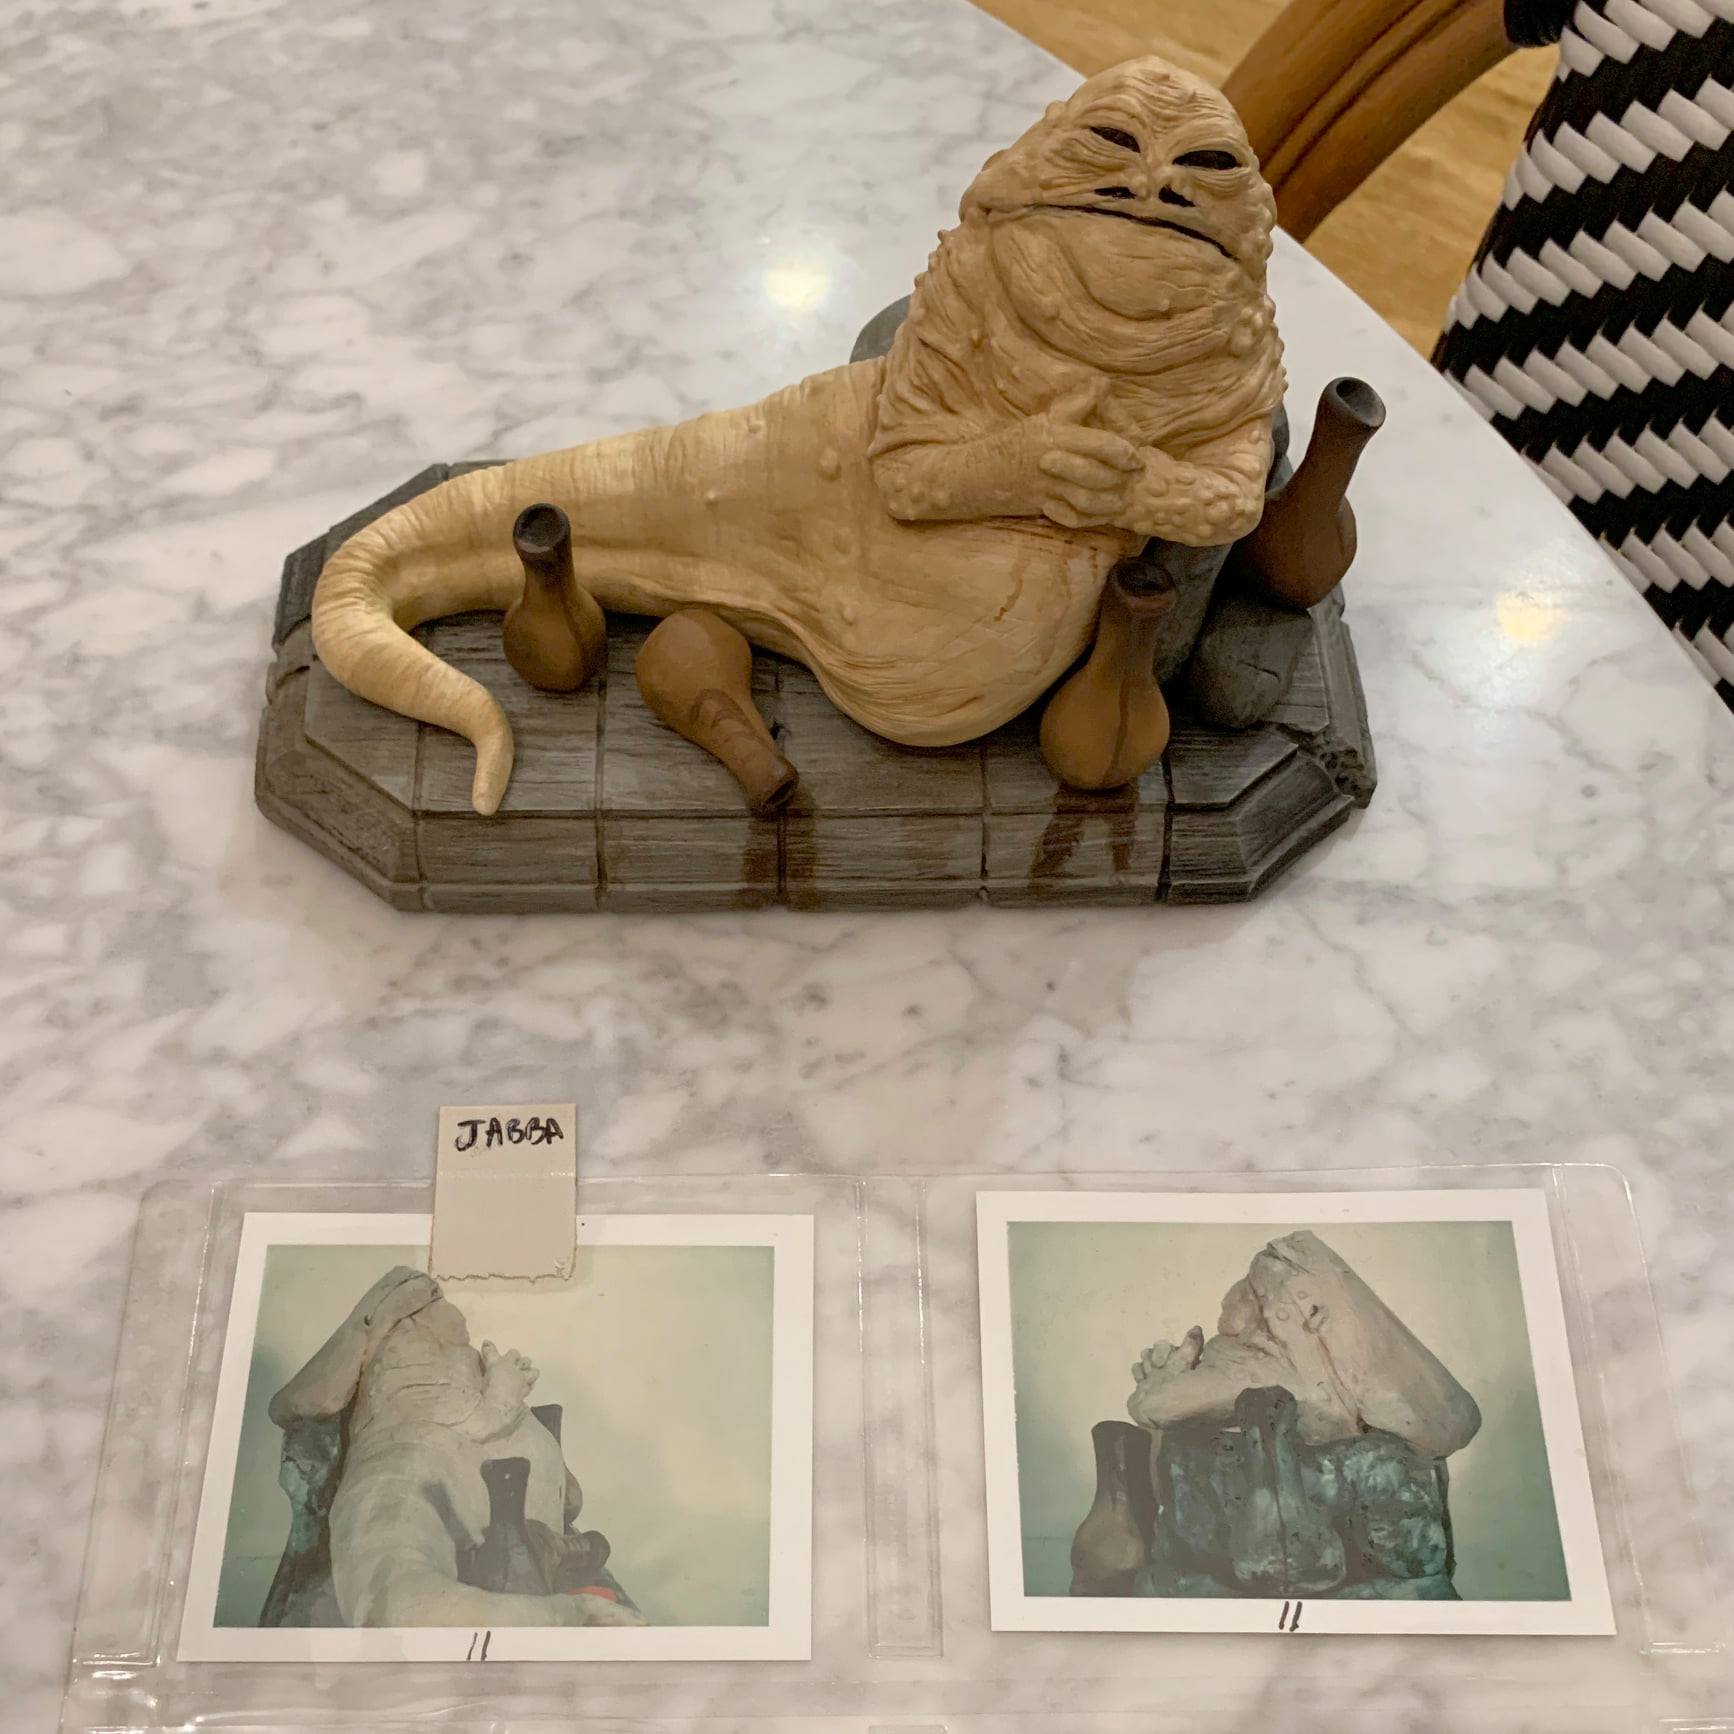 Star Wars replica maquette from Return of the Jedi